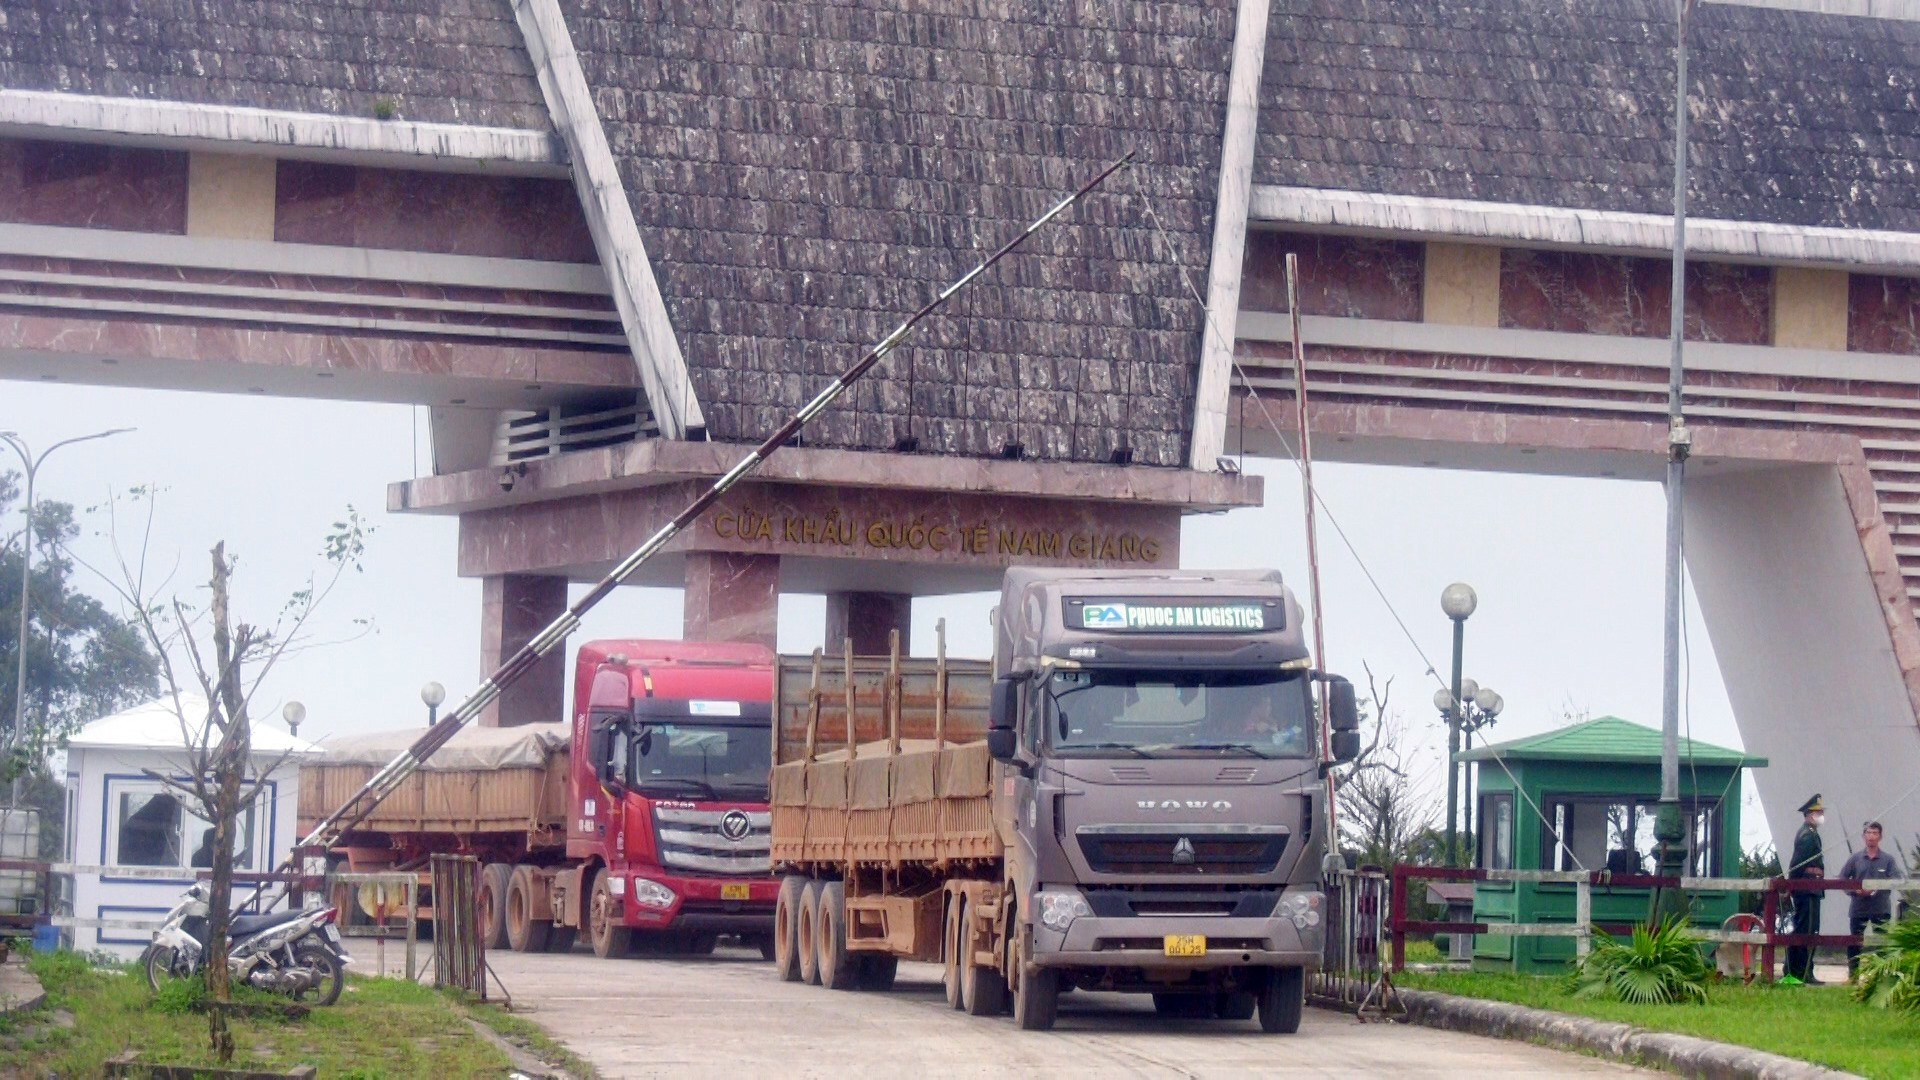 Dịp cuối năm các phương tiện vận chuyển hàng hóa qua khu vực cửa khẩu quốc tế Nam Giang tăng gấp 3 đến 4 lần so với ngày thường.